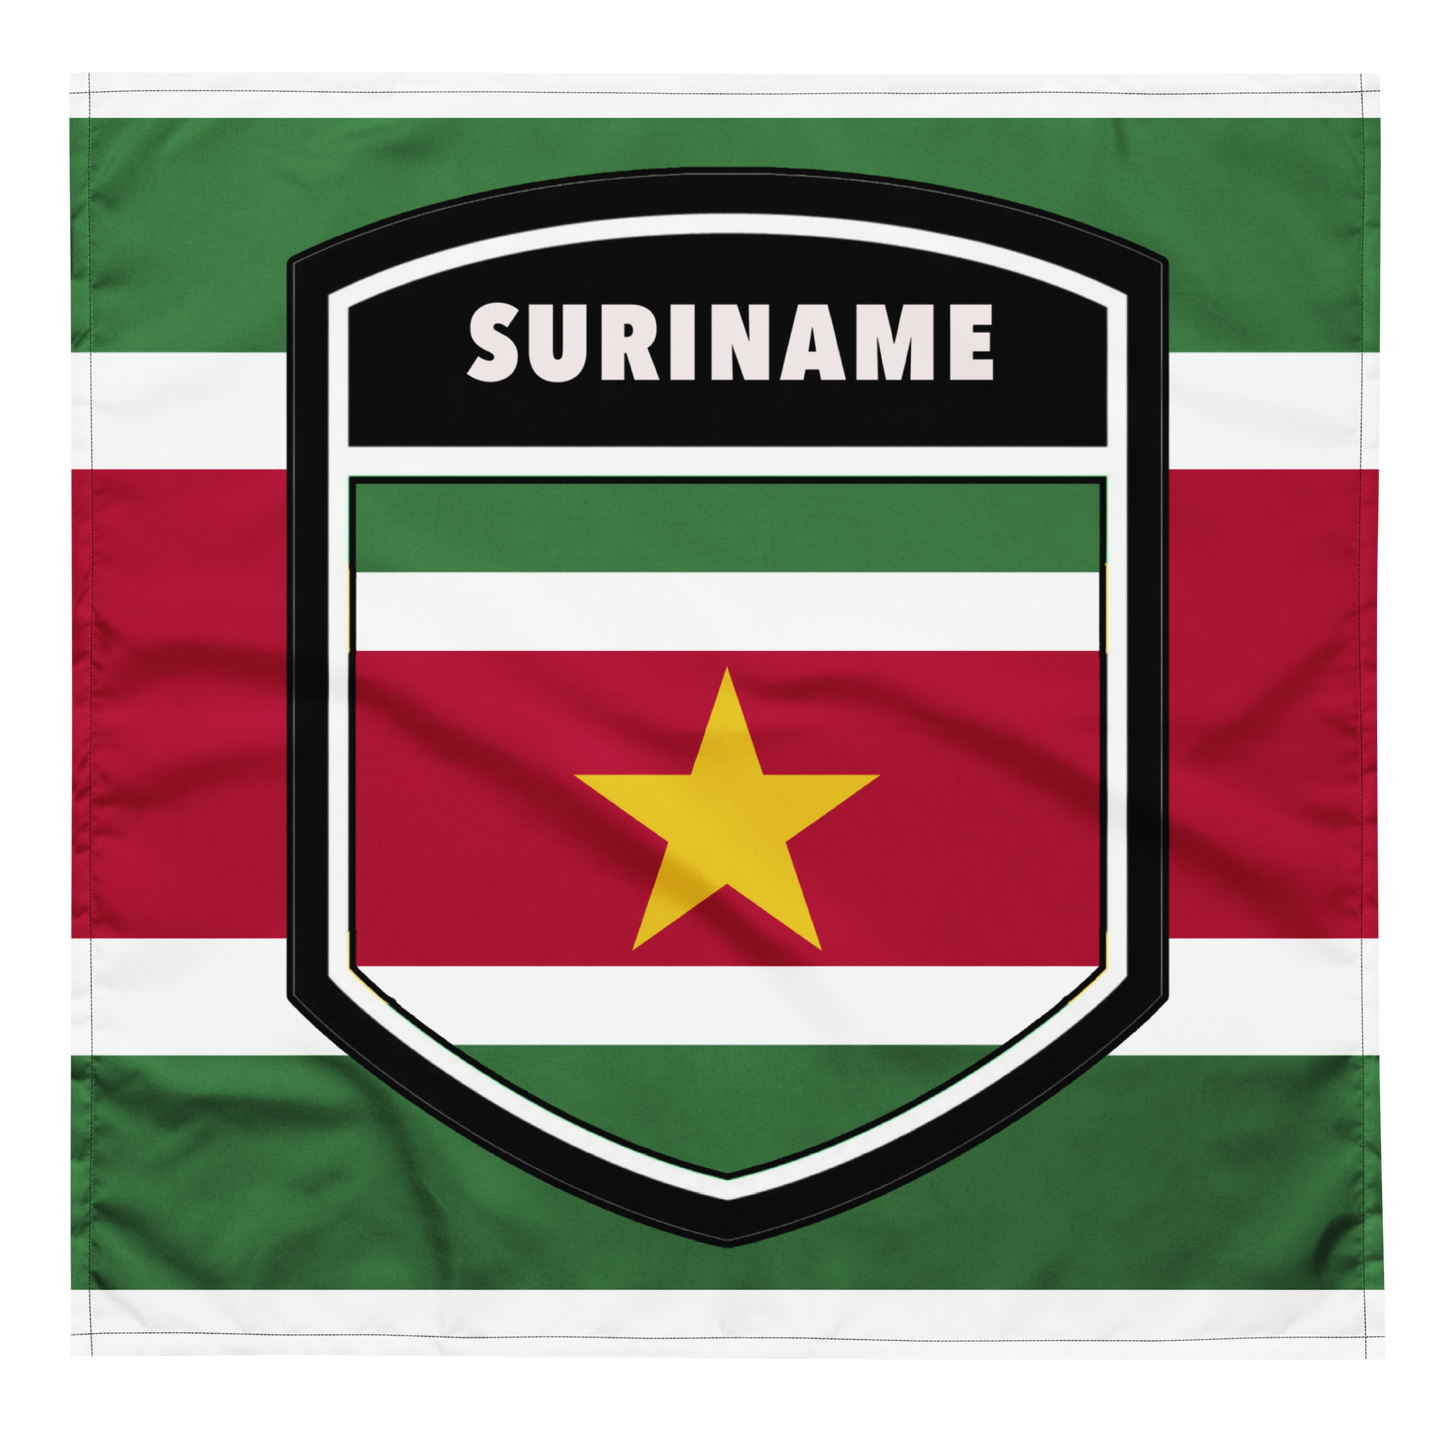 Suriname bandana